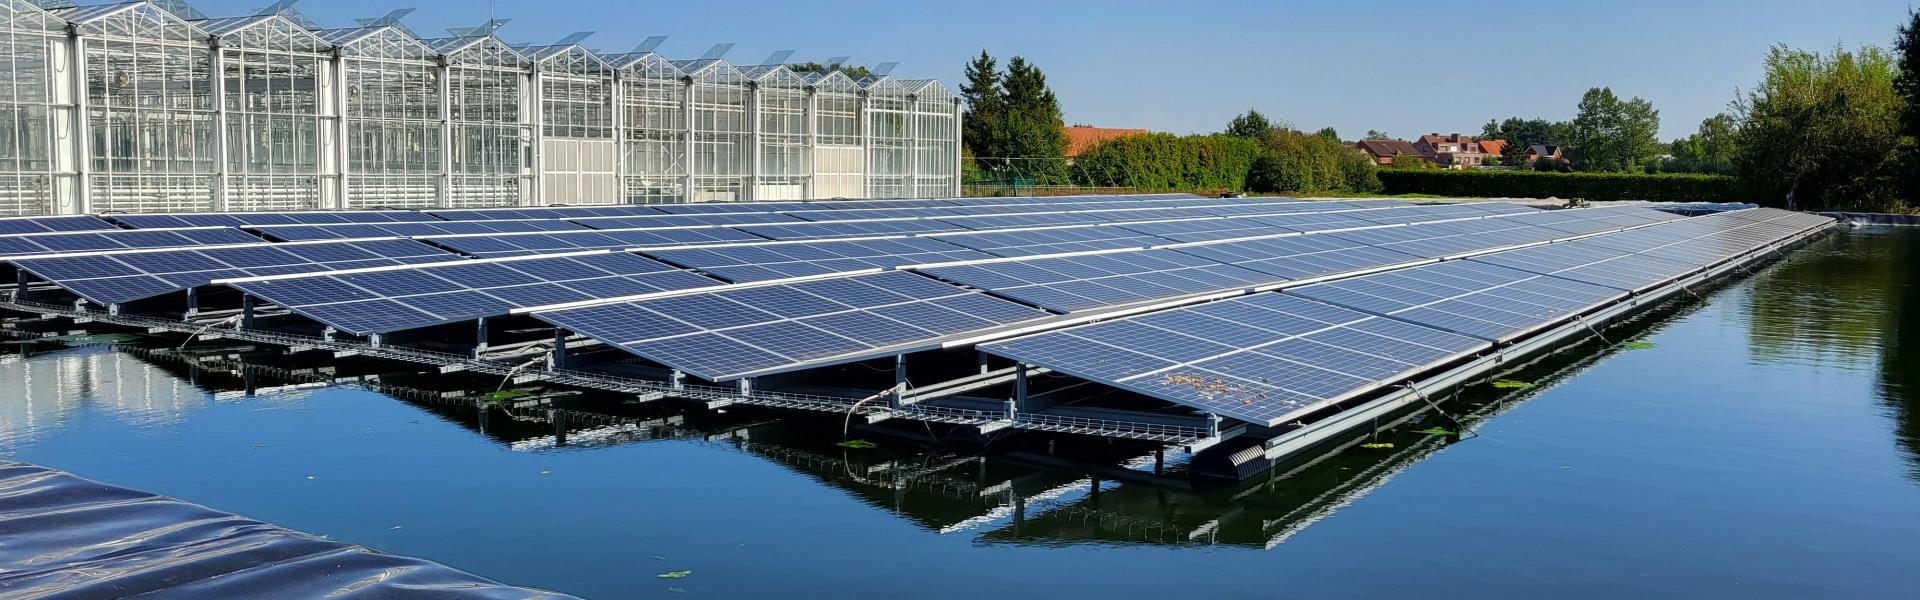 VLAM seminarie - regenwaterbassin met drijvende zonnepanelen